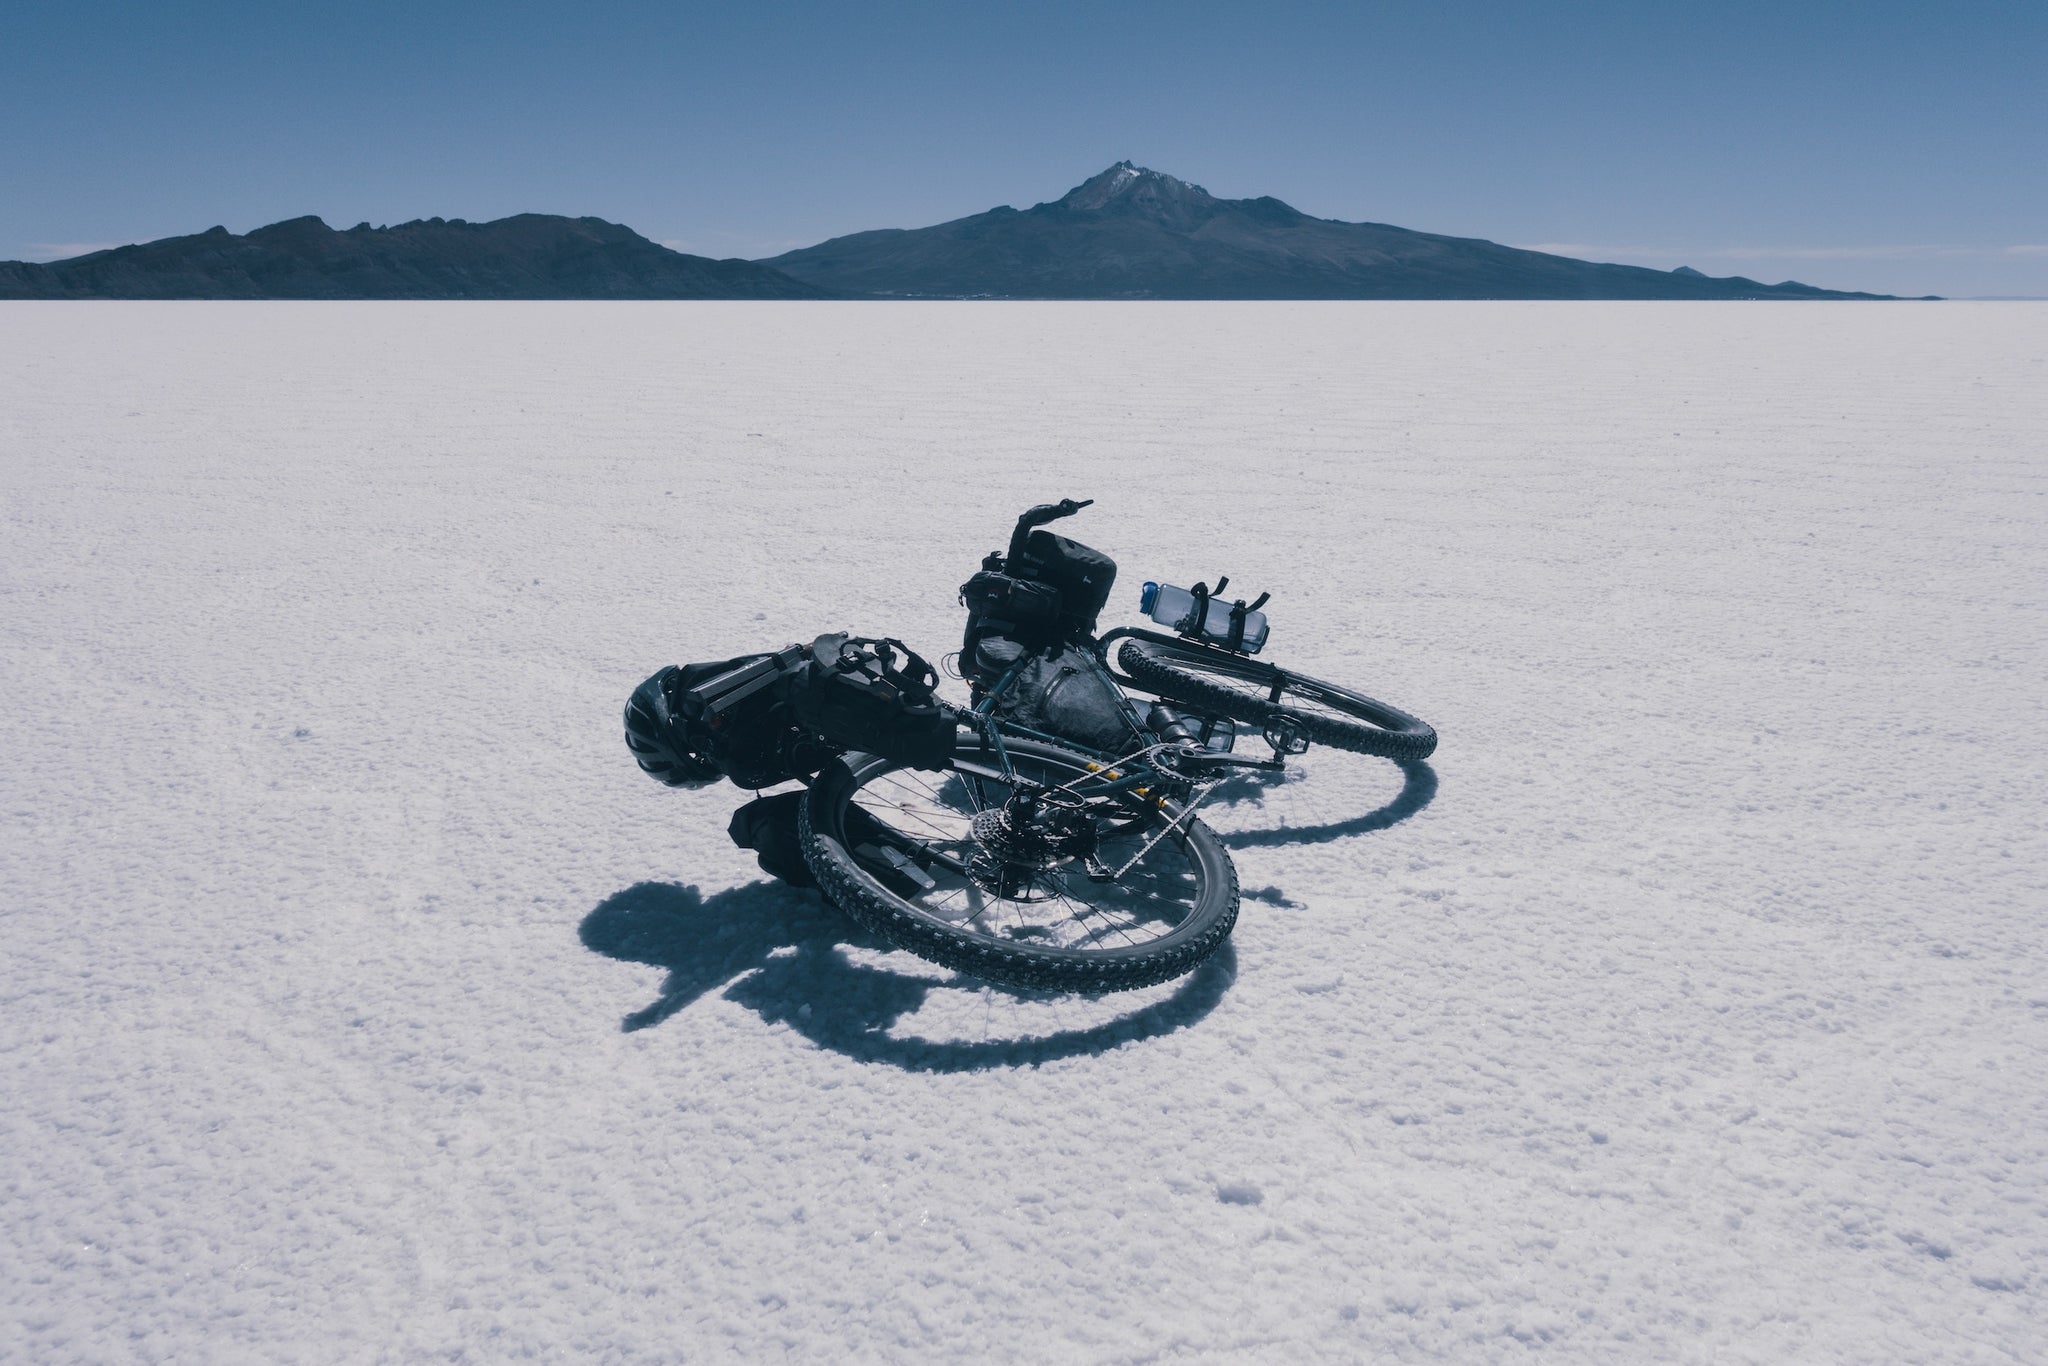 Bike resting on salt flat